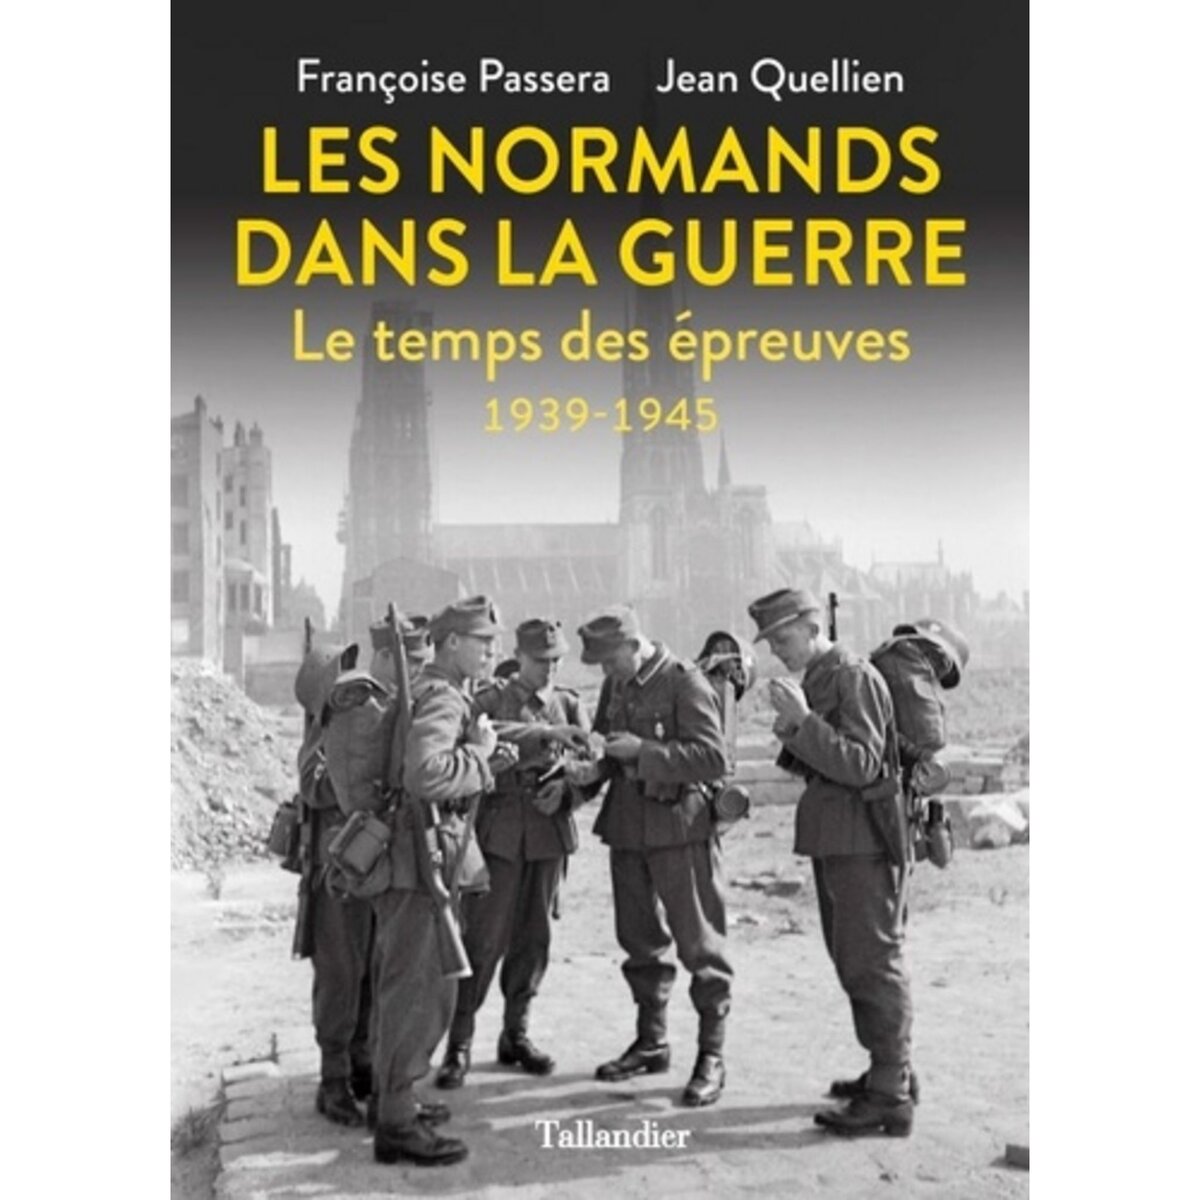  LES NORMANDS DANS LA GUERRE. LE TEMPS DES EPREUVES 1939-1945, Passera Françoise